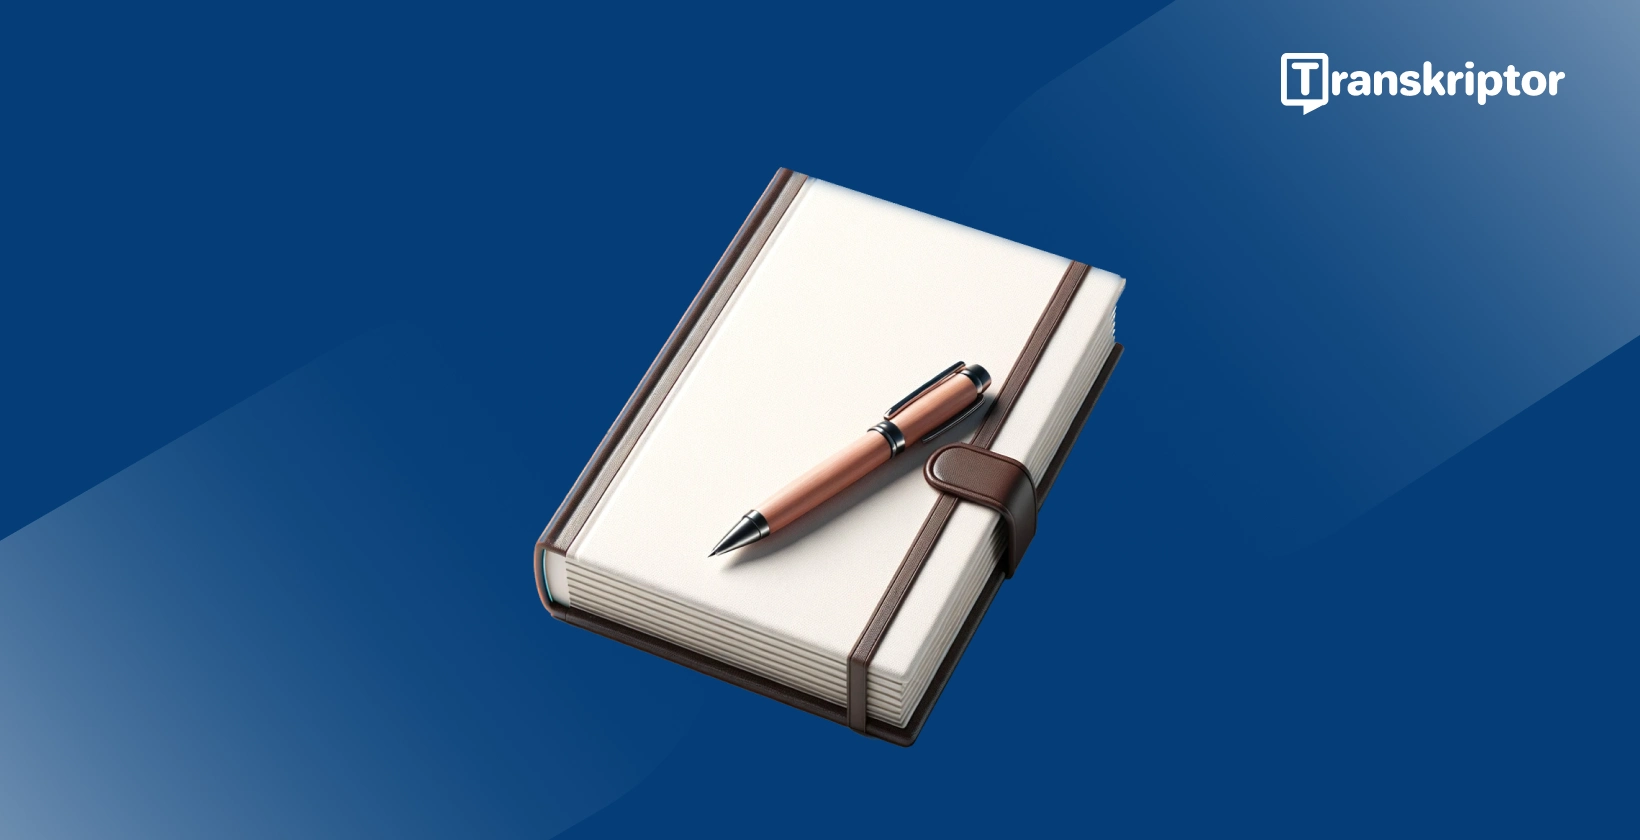 Perangkat lunak dikte untuk penulis, menunjukkan buku catatan dan pena, melambangkan alat tulis.